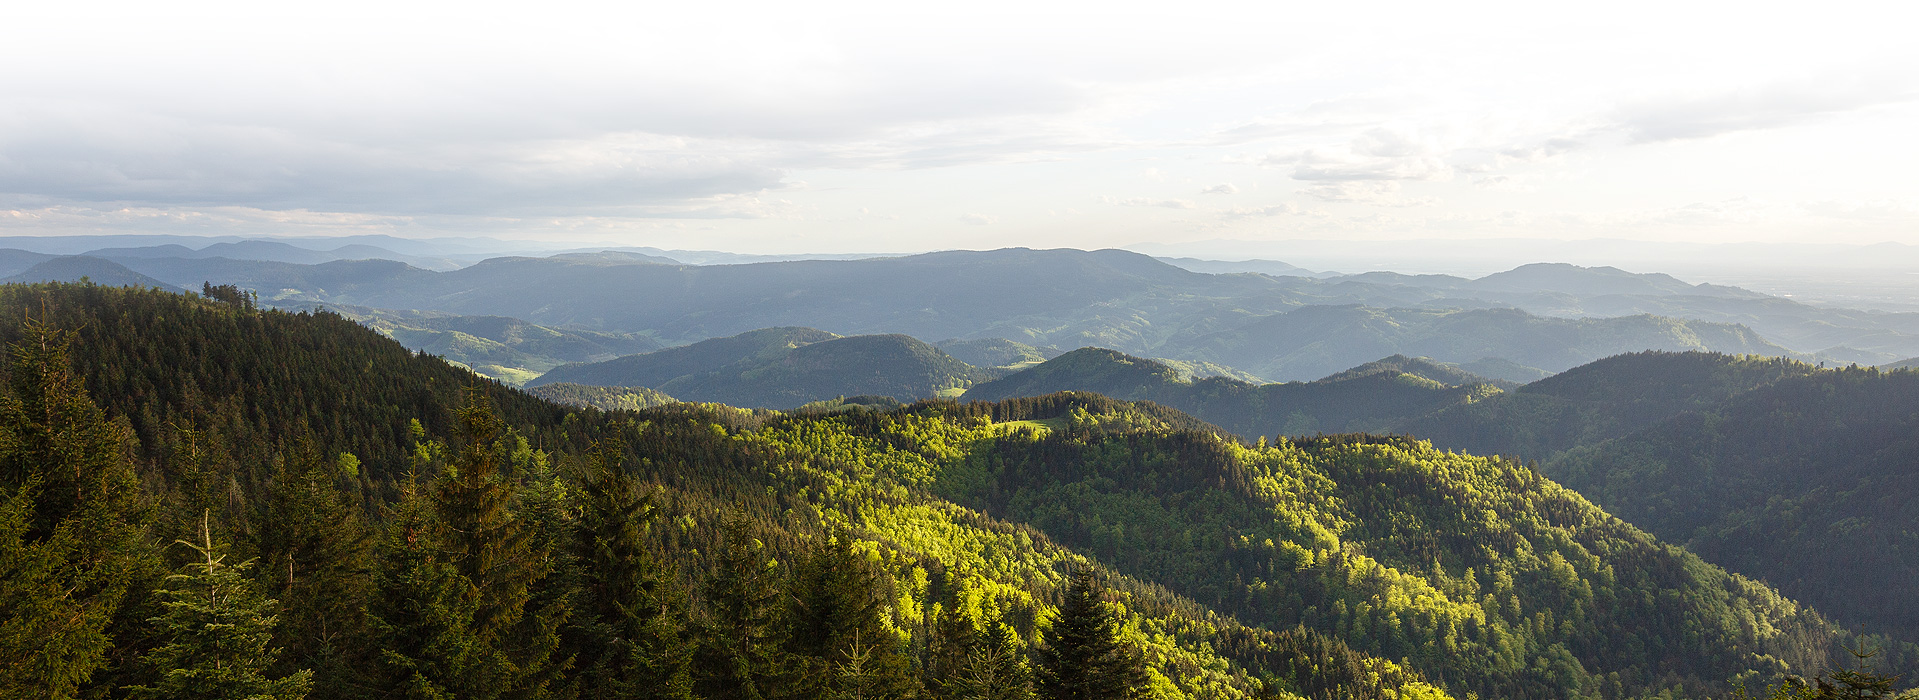 Ein Ausblick auf die bewaldeten Berge des Schwarzwalds. Die Mischung aus Nadelbäumen und Laubbäumen ist durch unterschiedliche Grüntöne gut zu erkennen.